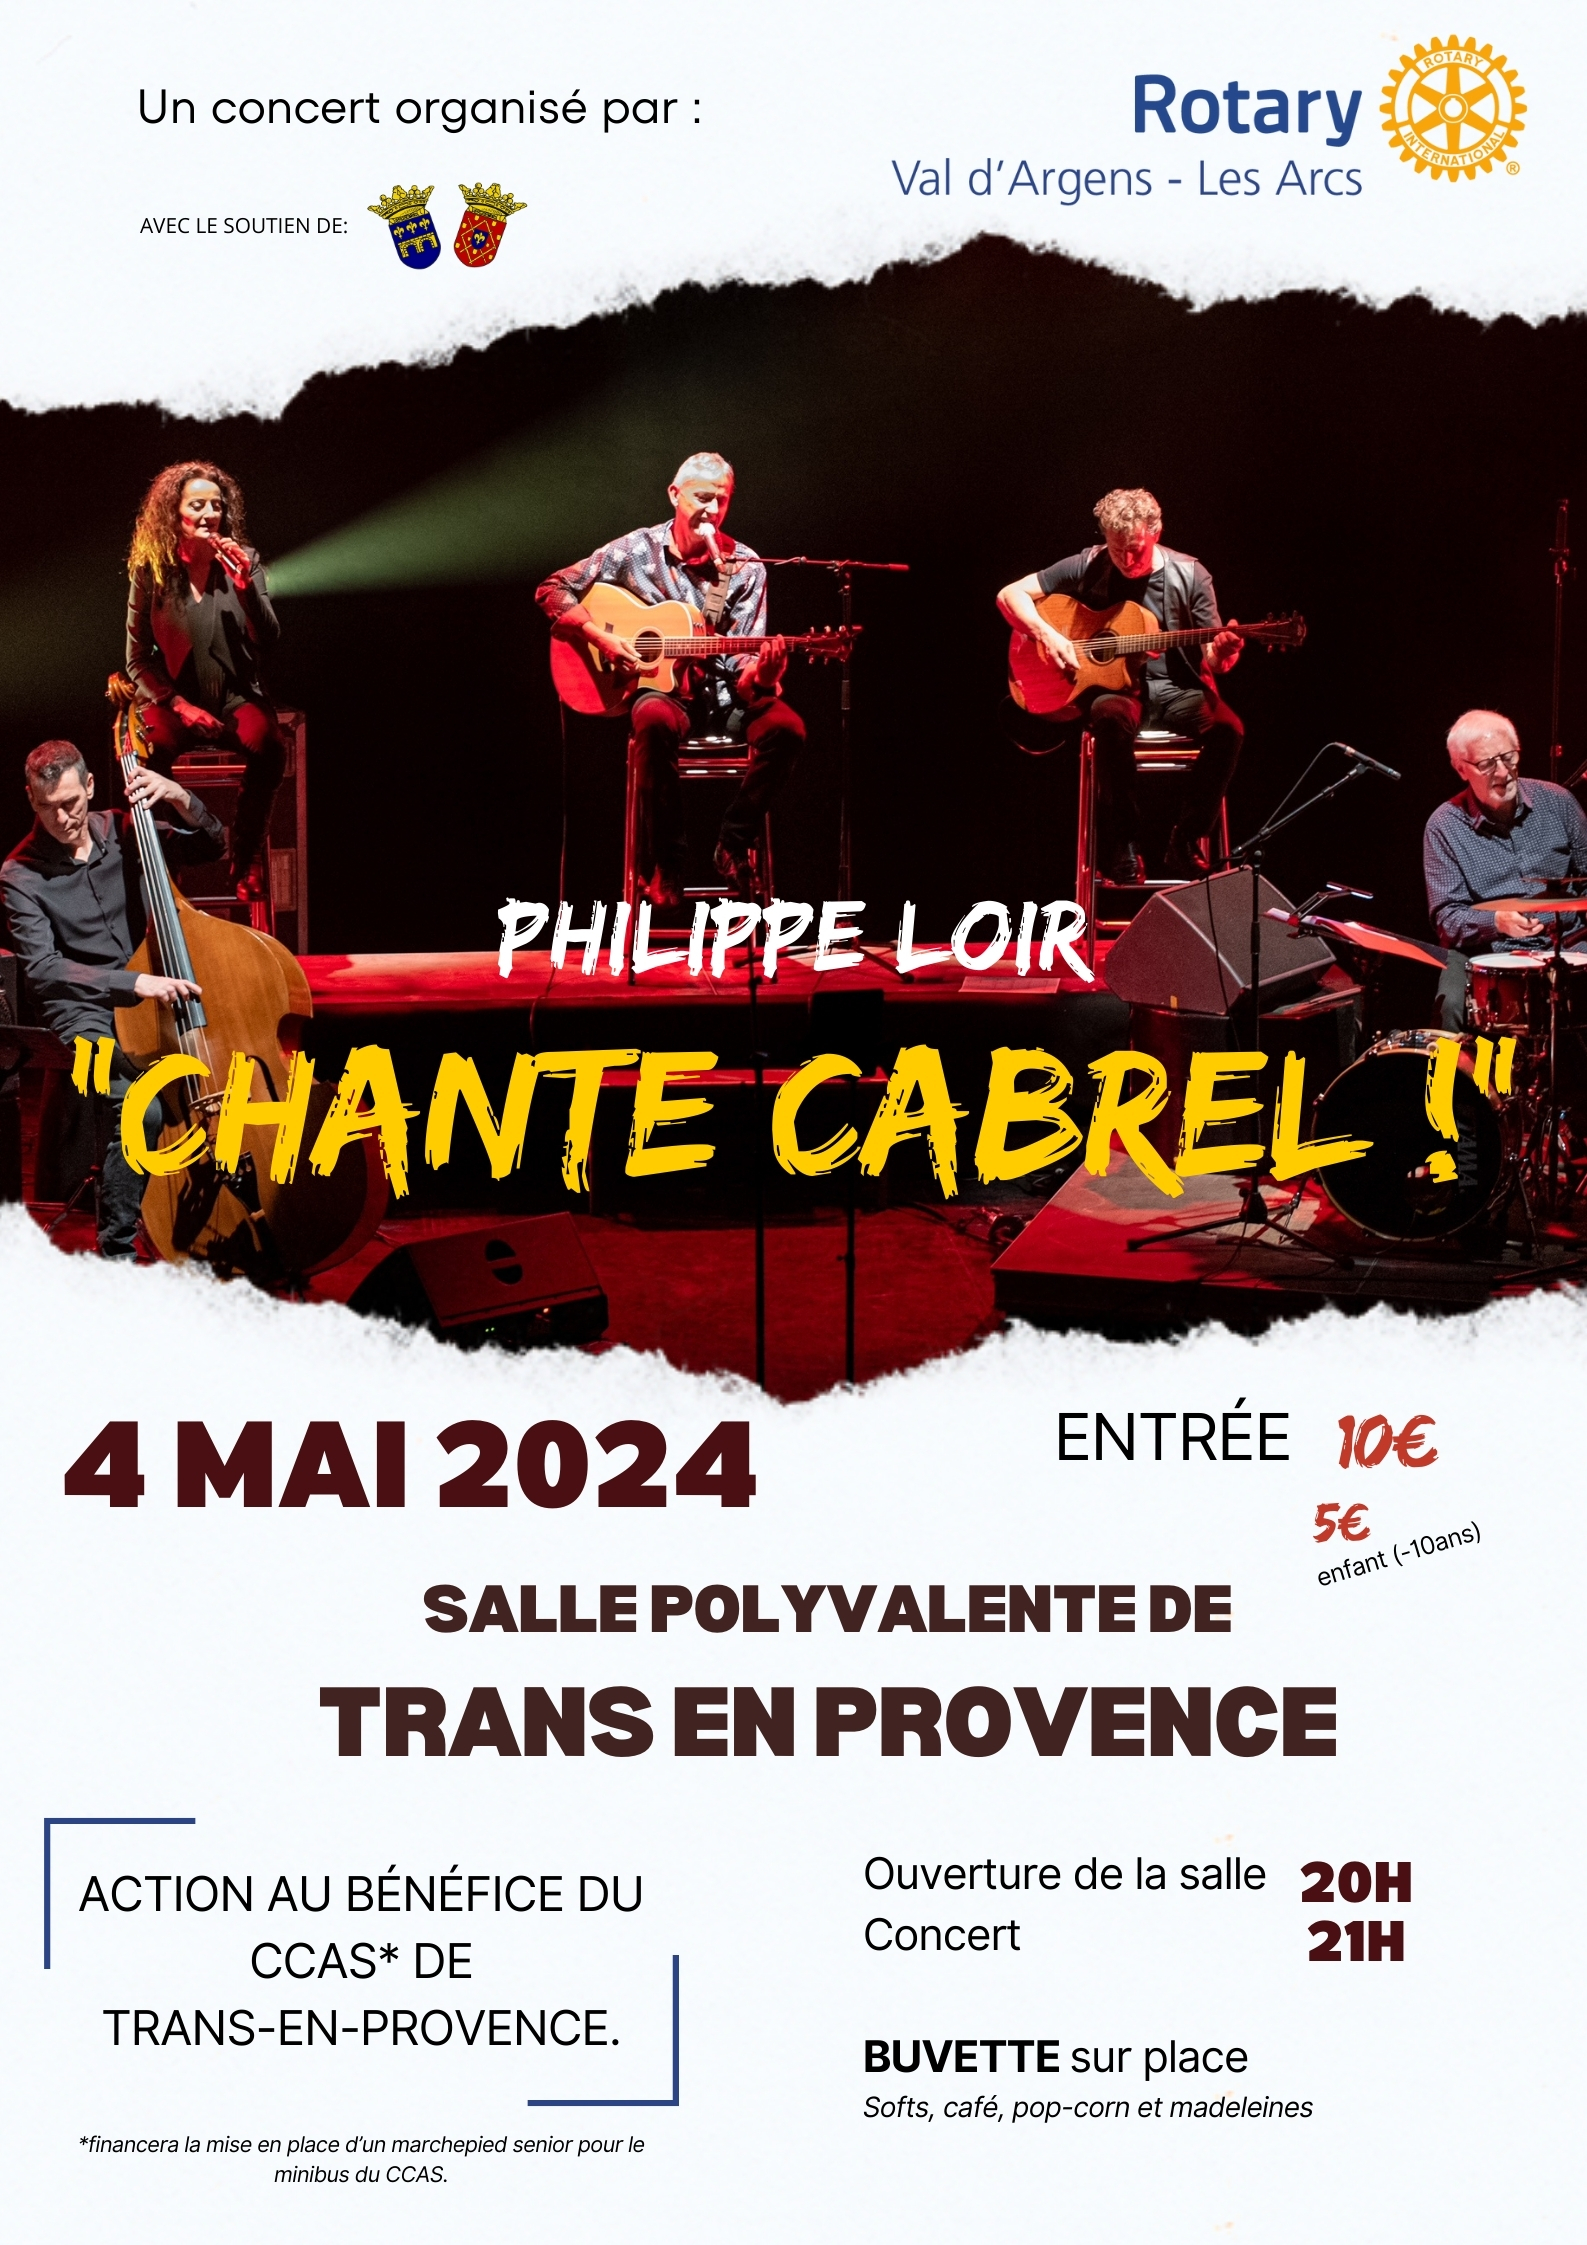 Philippe Loir chante Cabrel. Le 4 mai 2024, 21h, salle polyvalente de Trans-en-Provence. Organisé par le Rotary Club, au profit du CCAS de Trans-en-Provence. Tarif : 10€ (5€ pour les moins de 10 ans).